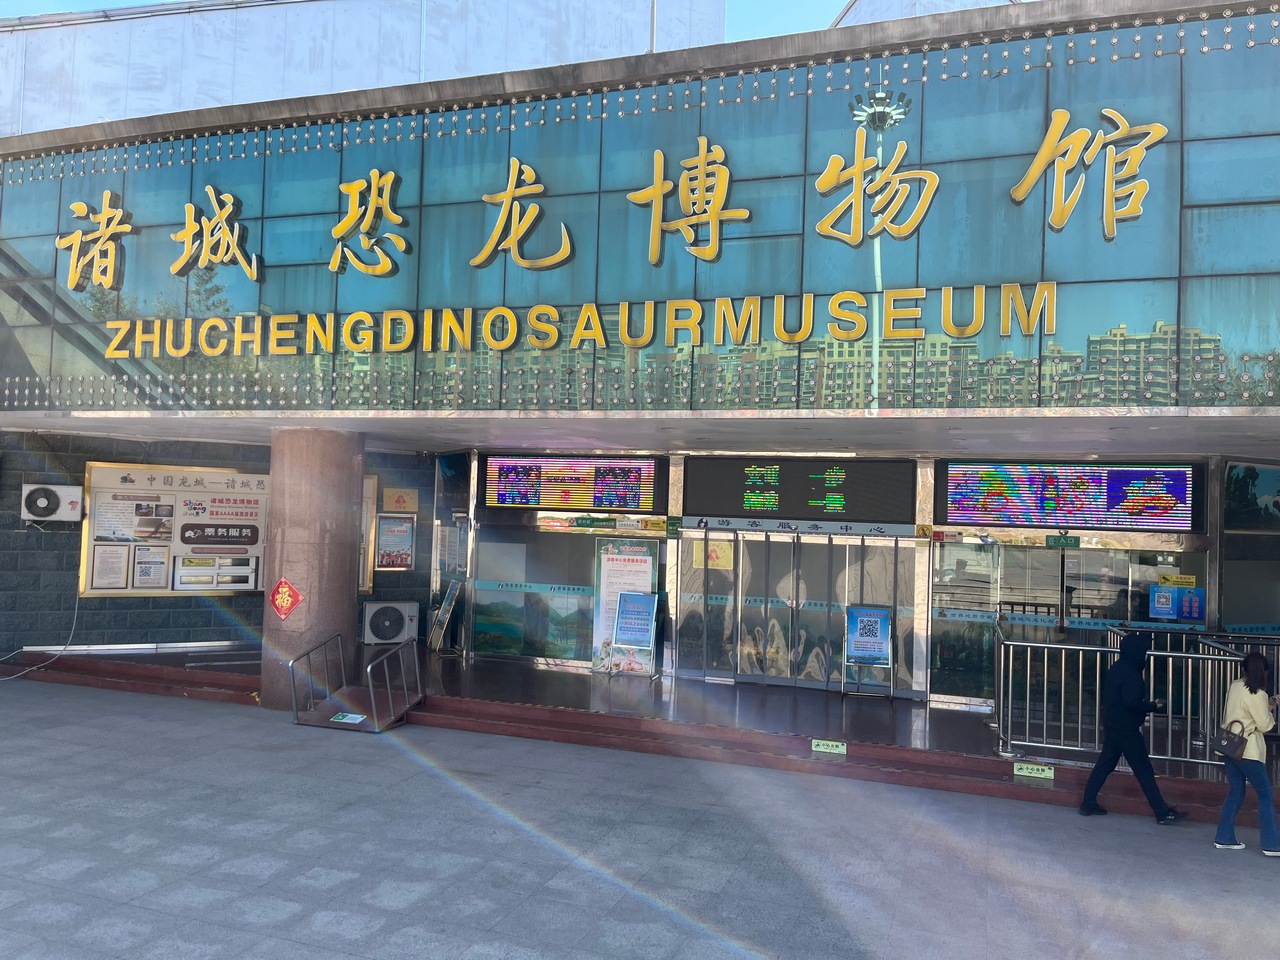 恐竜博物館の入り口。なんと今日は入場券無料とのこと。